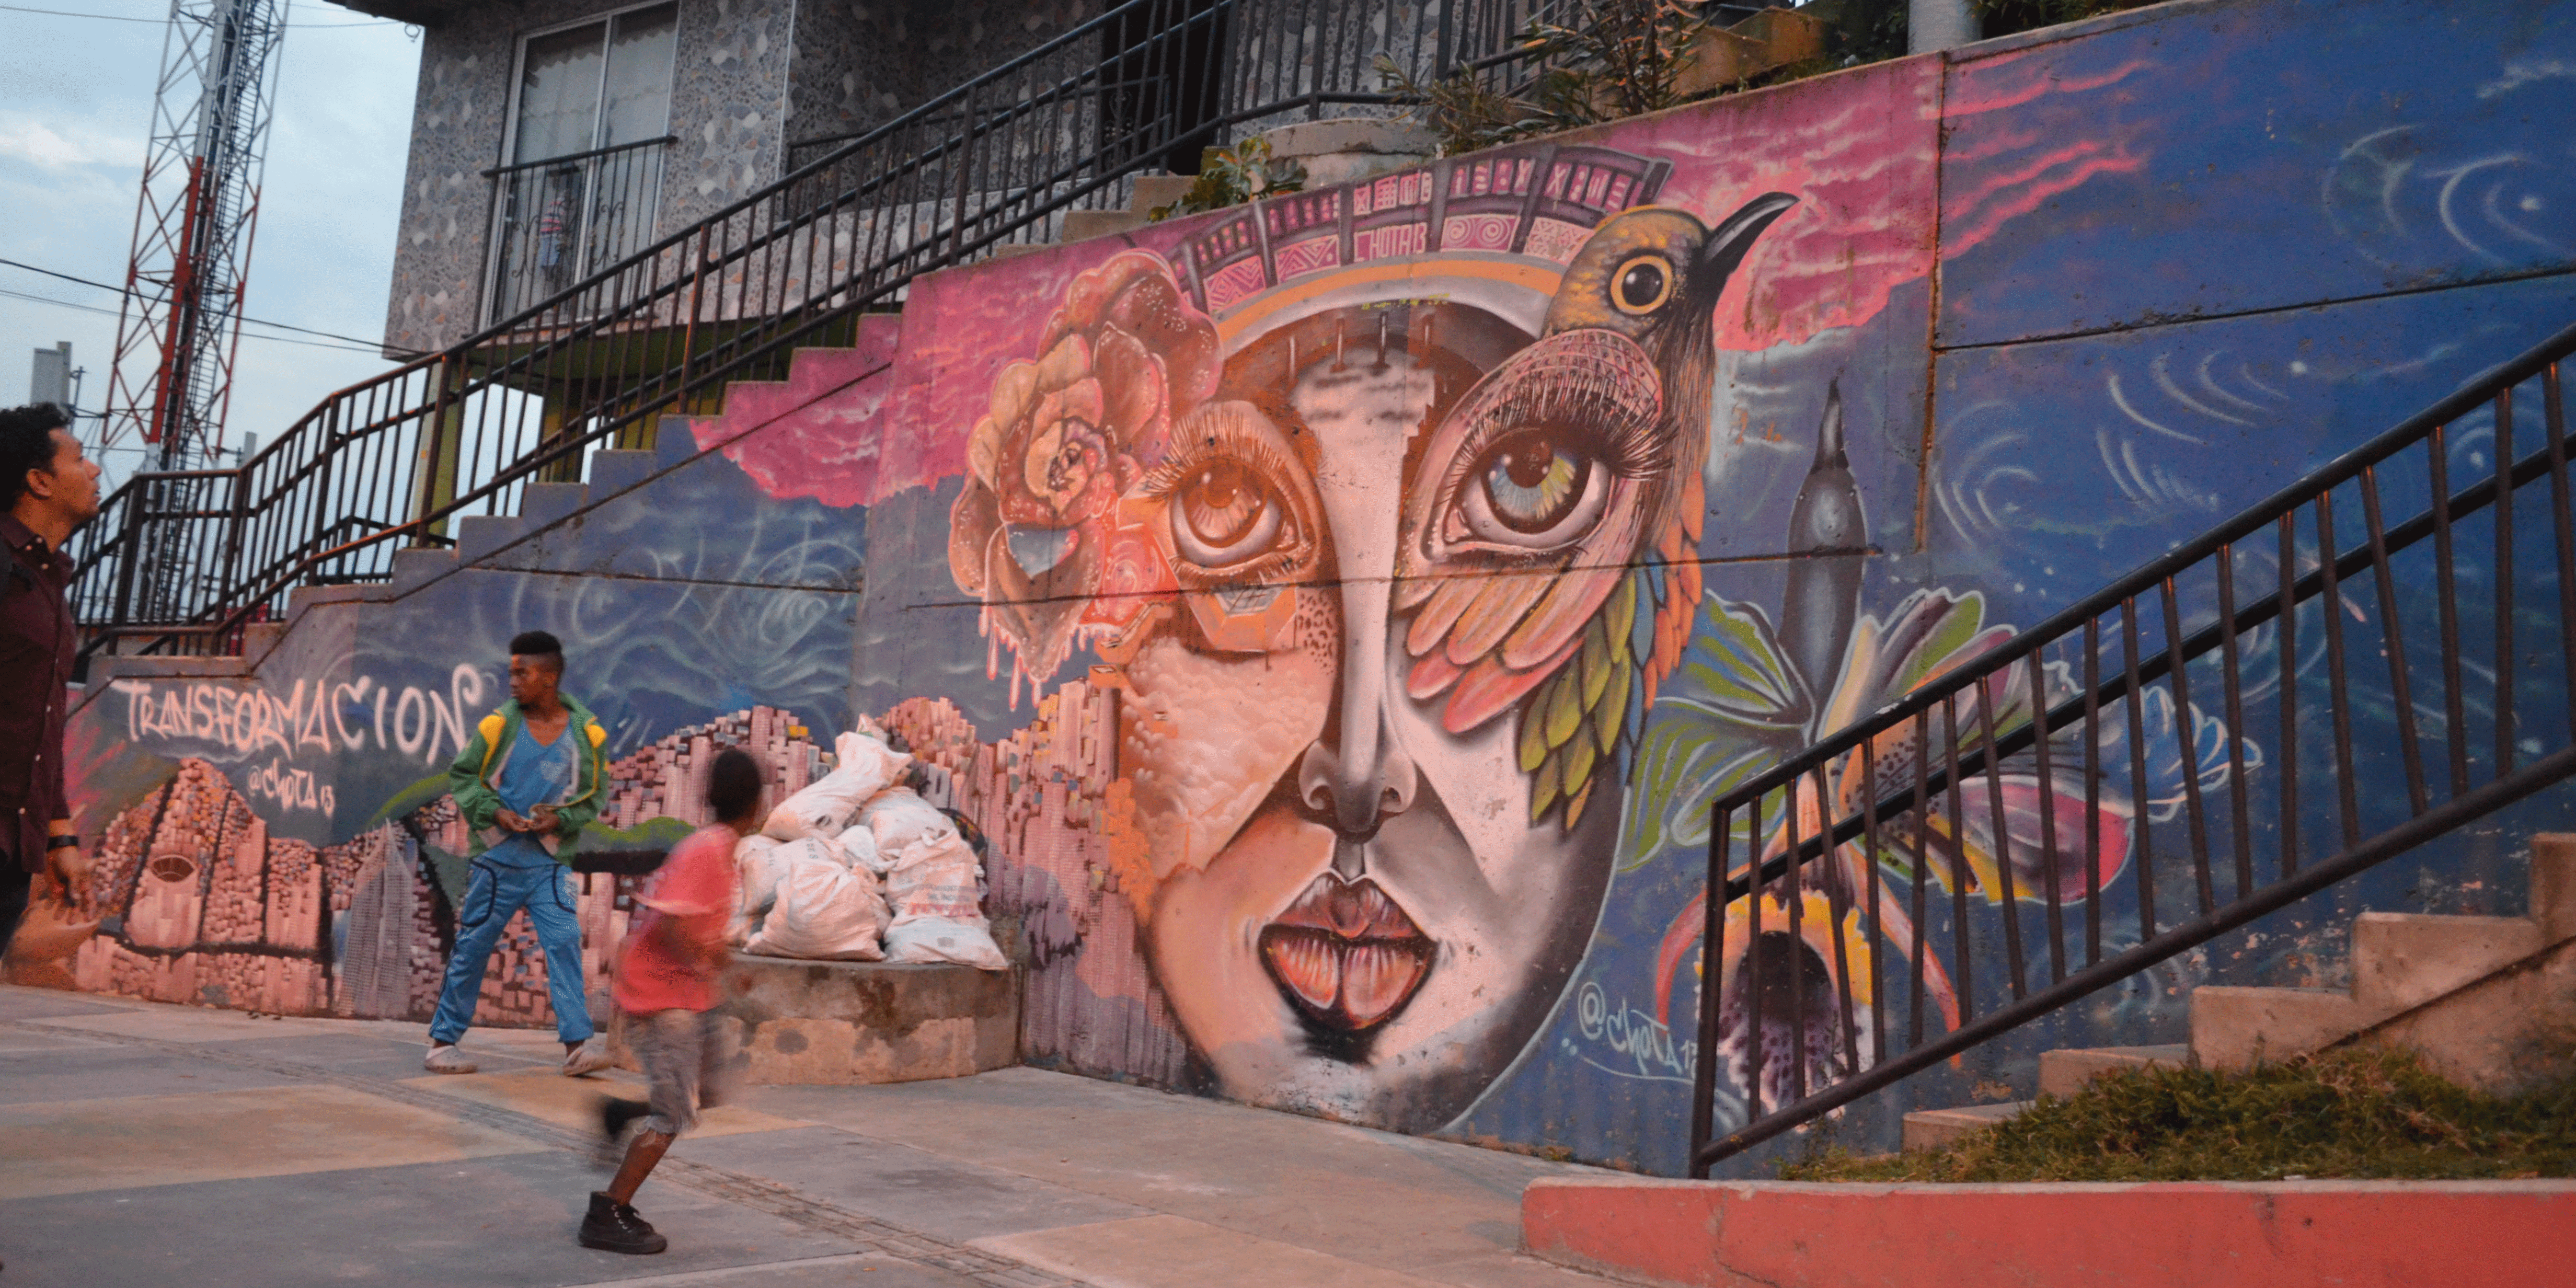 Promotores turísticos de Cundinamarca visitan lugares icónicos de Medellín


















































